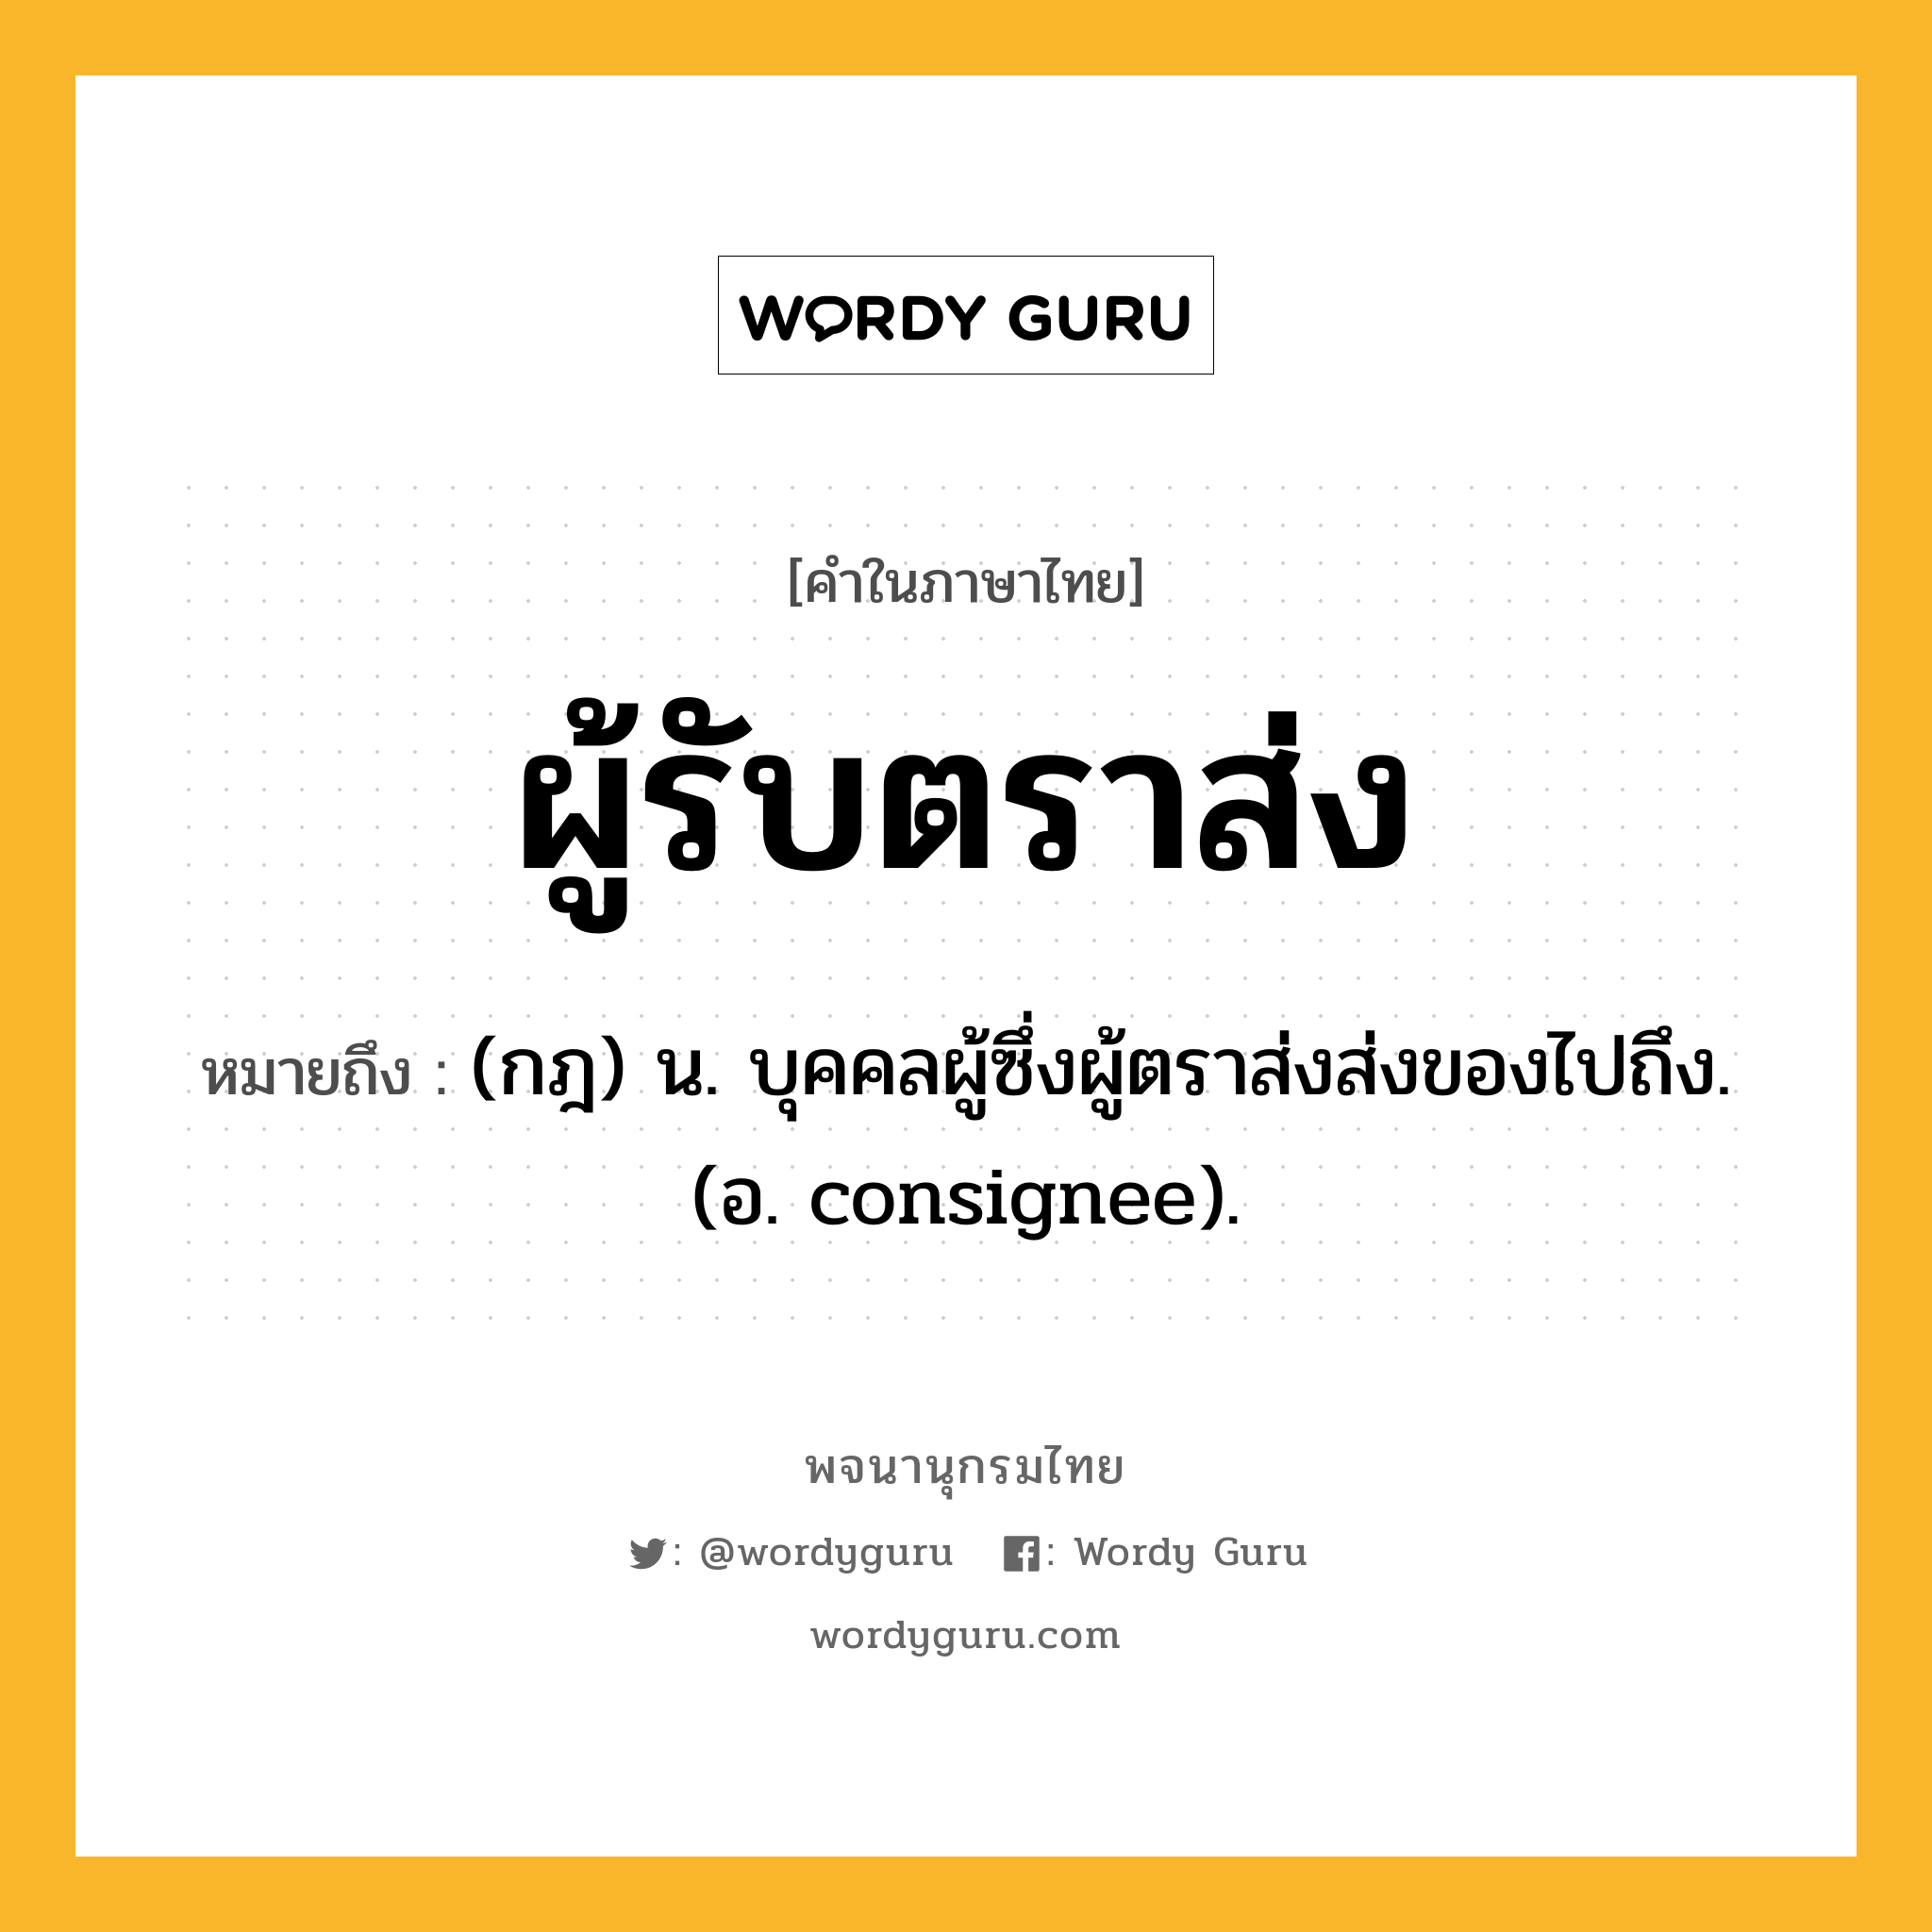 ผู้รับตราส่ง ความหมาย หมายถึงอะไร?, คำในภาษาไทย ผู้รับตราส่ง หมายถึง (กฎ) น. บุคคลผู้ซึ่งผู้ตราส่งส่งของไปถึง. (อ. consignee).